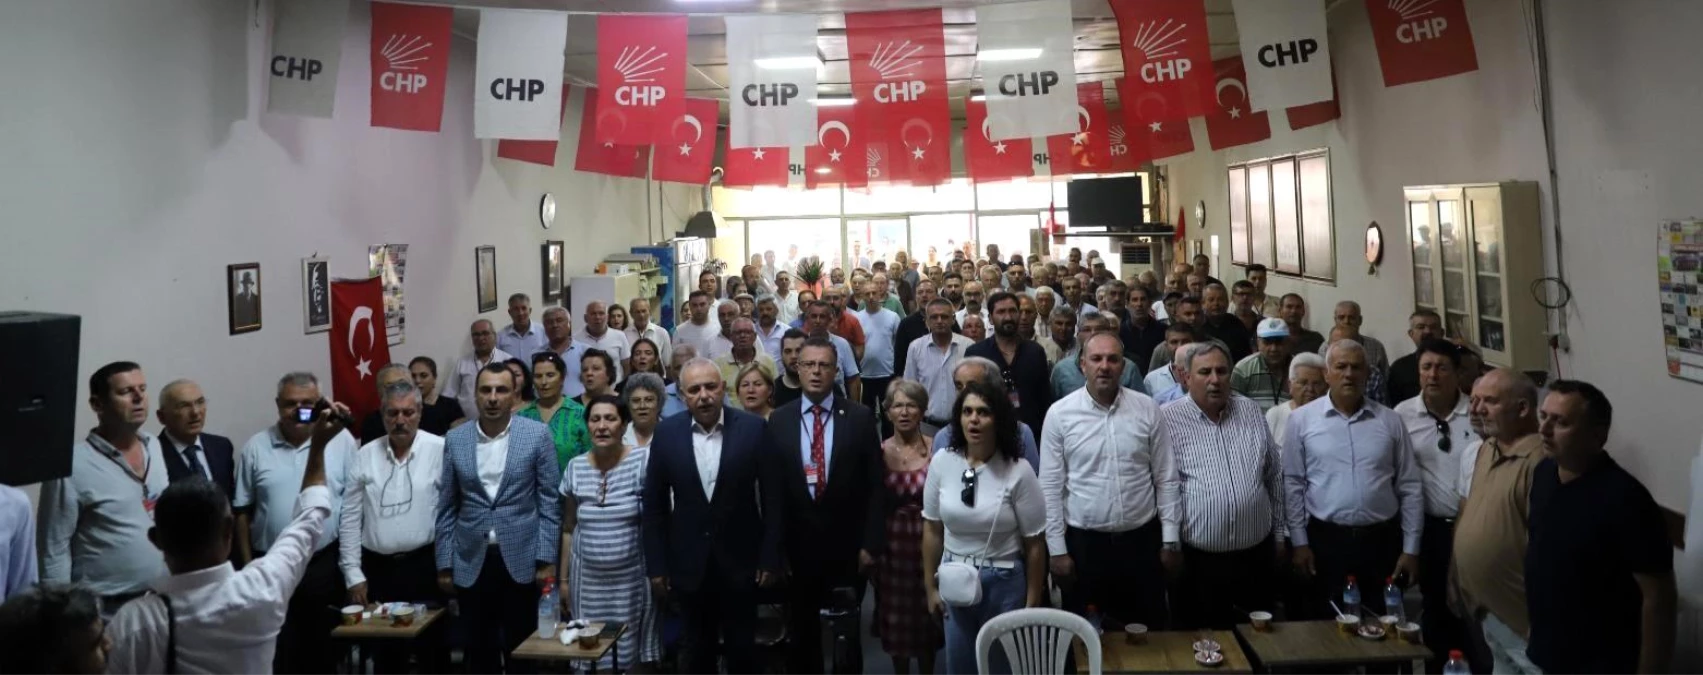 CHP Alaşehir İlçe Kongresi Sonucunda Mustafa Öztürk Yeni Başkan Seçildi